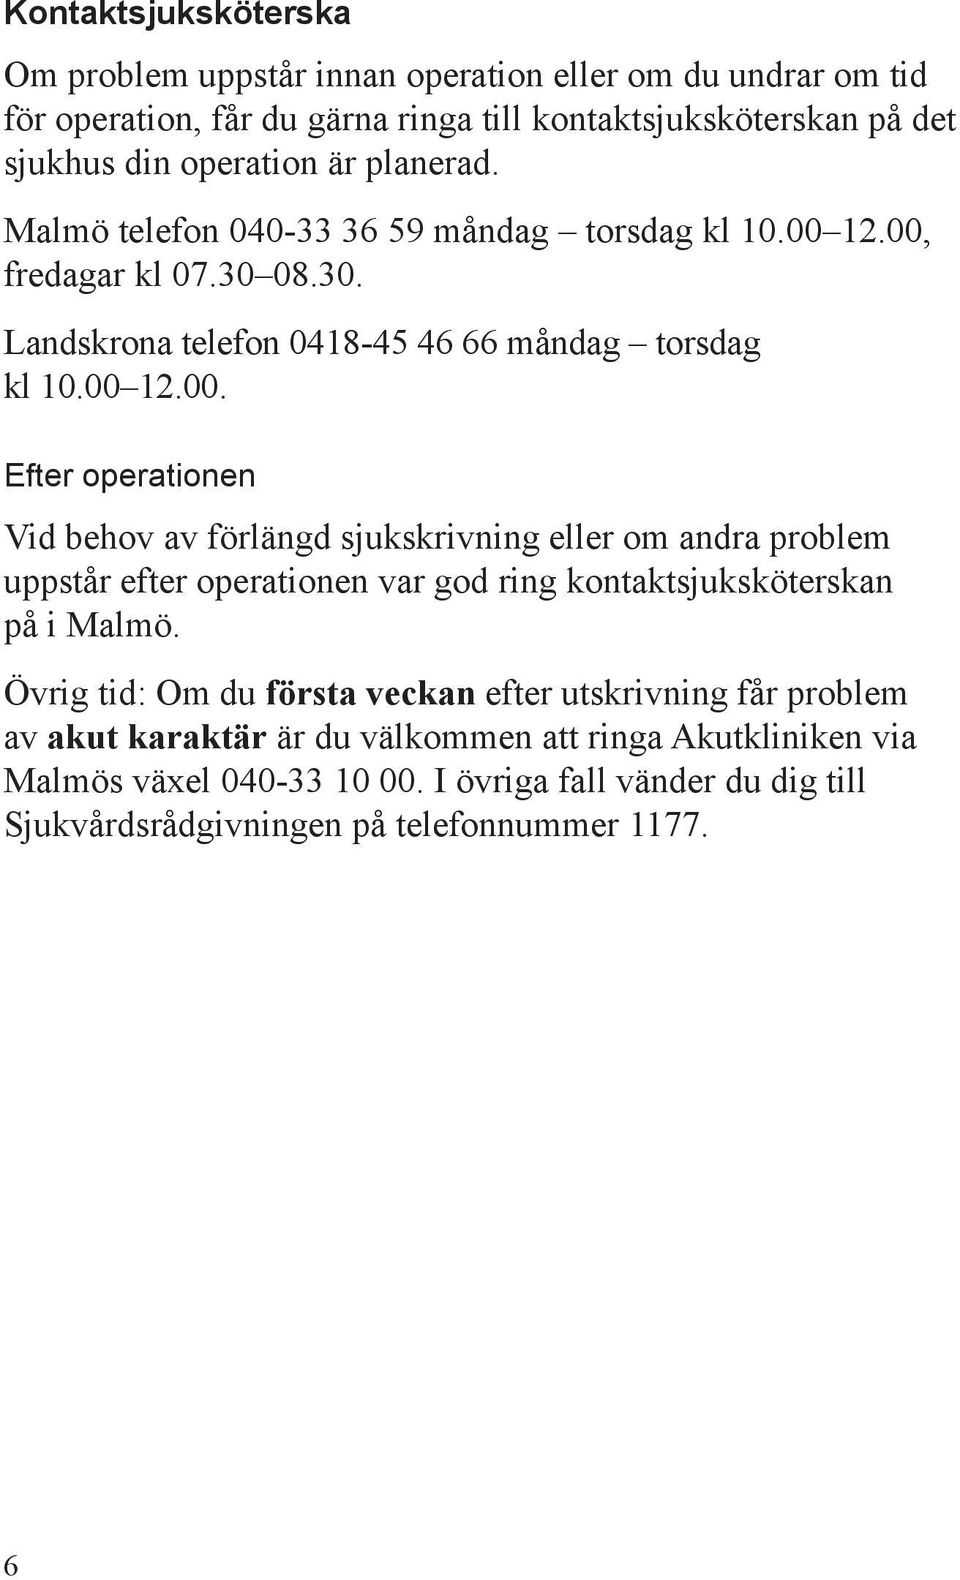 12.00, fredagar kl 07.30 08.30. Landskrona telefon 0418-45 46 66 måndag torsdag kl 10.00 12.00. Efter operationen Vid behov av förlängd sjukskrivning eller om andra problem uppstår efter operationen var god ring kontaktsjuksköterskan på i Malmö.